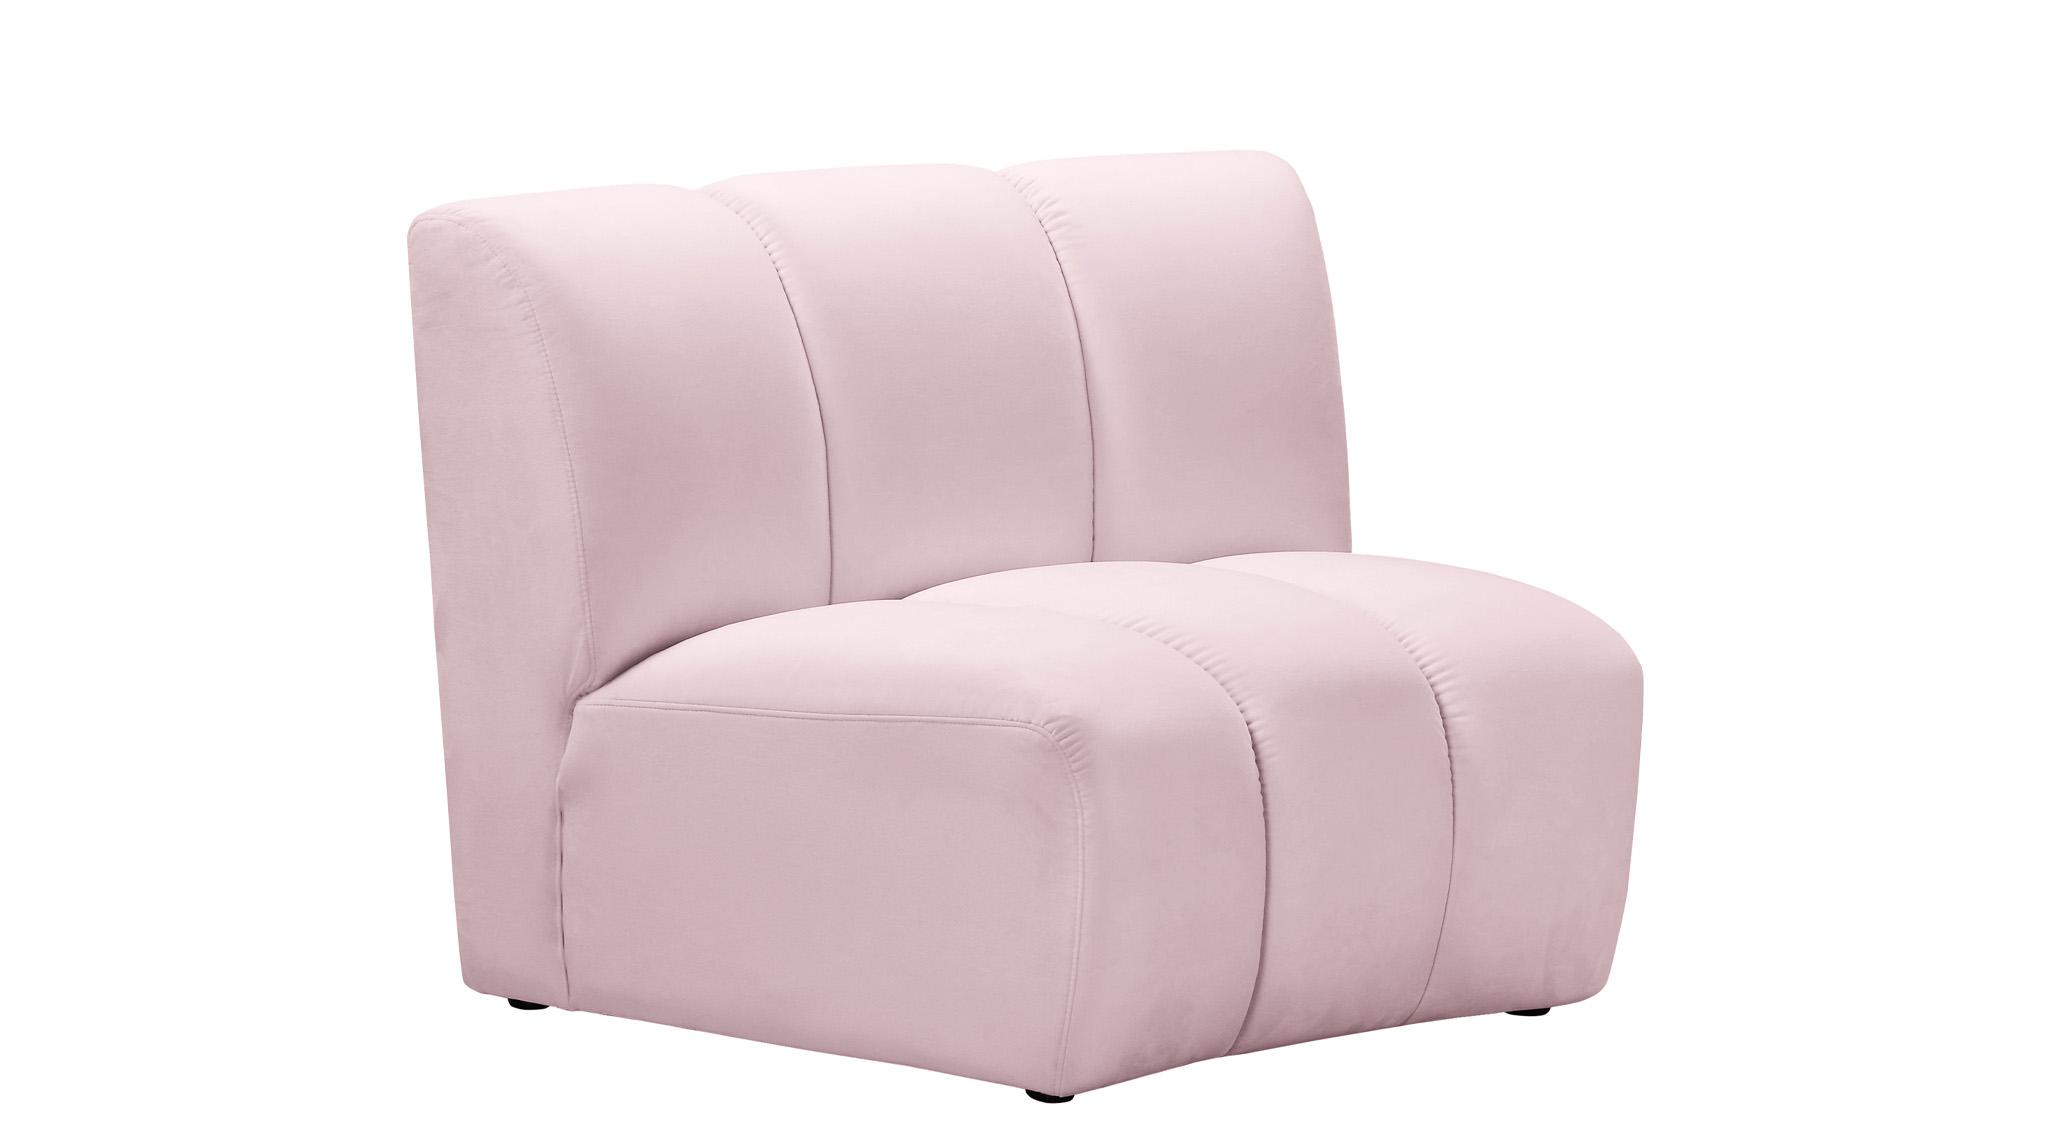 

    
638Pink-2PC Meridian Furniture Modular Sectional Sofa
